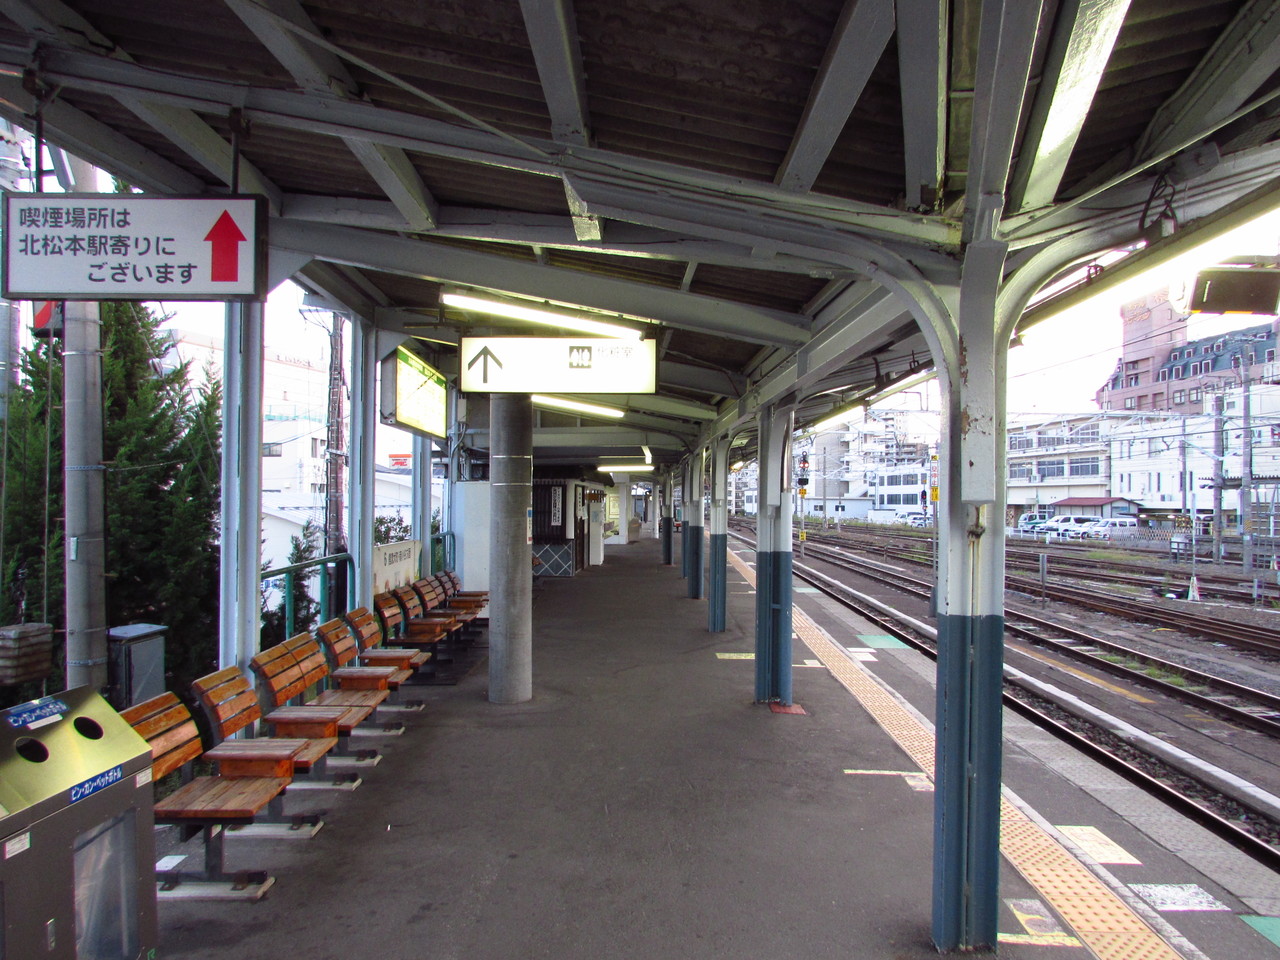 １８旅２０１６夏 ｊｒ東海完乗へ Xiii 松本駅 鉄路の響きを追って 第二章